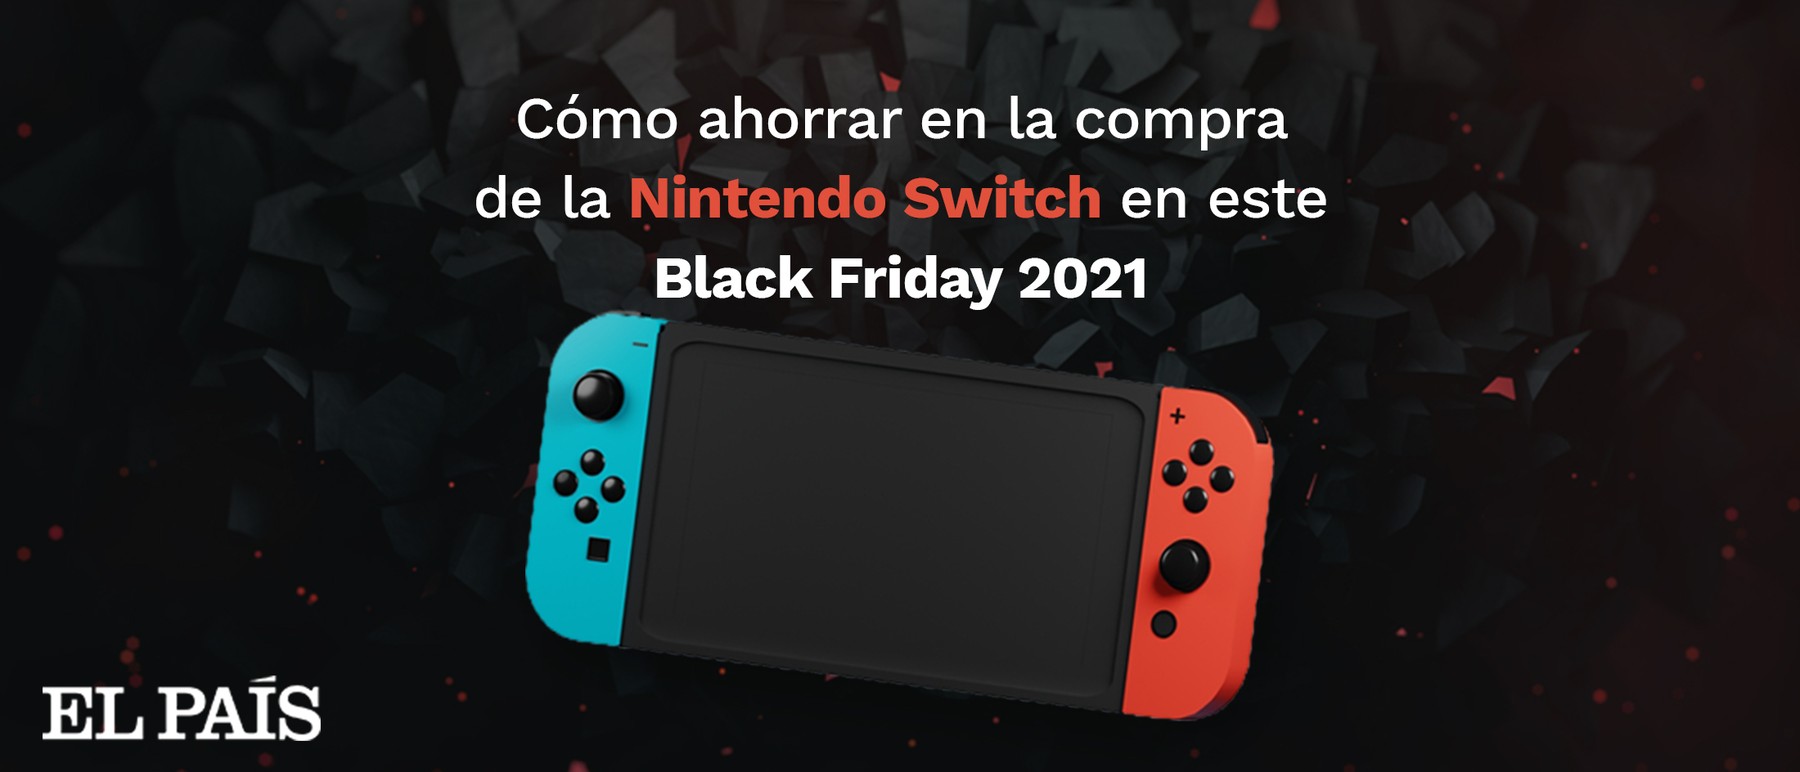 Cómo ahorrar en la compra de la Nintendo Switch durante Black Friday 2021